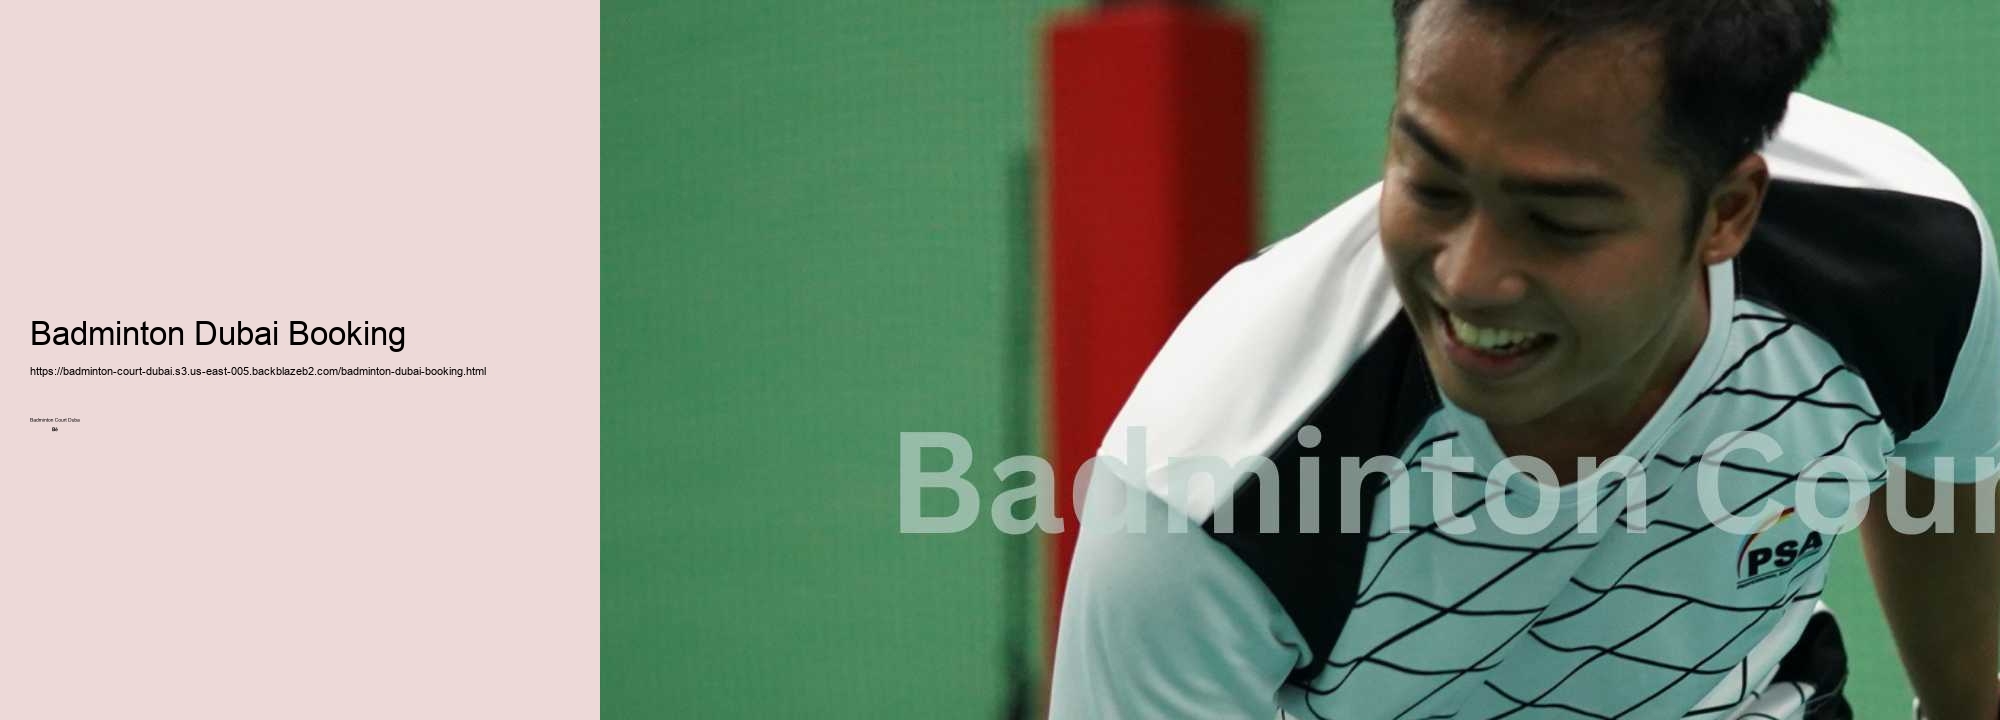 Badminton Dubai Booking